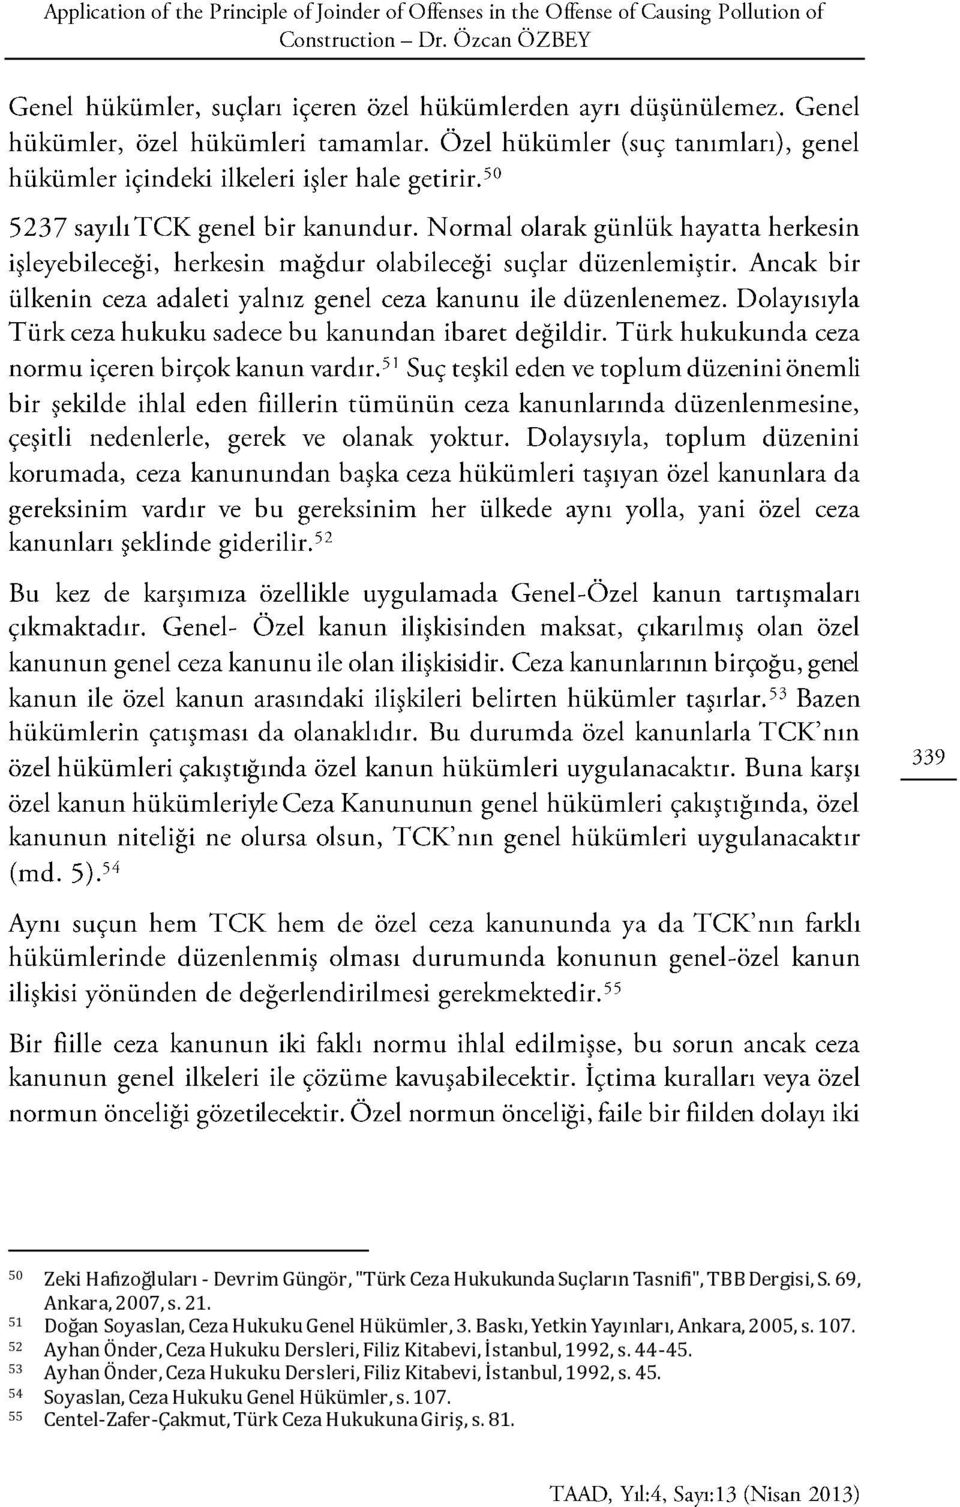 52 Ayhan Önder, Ceza Hukuku Dersleri, Filiz Kitabevi, İstanbul, 1992, s. 44-45.